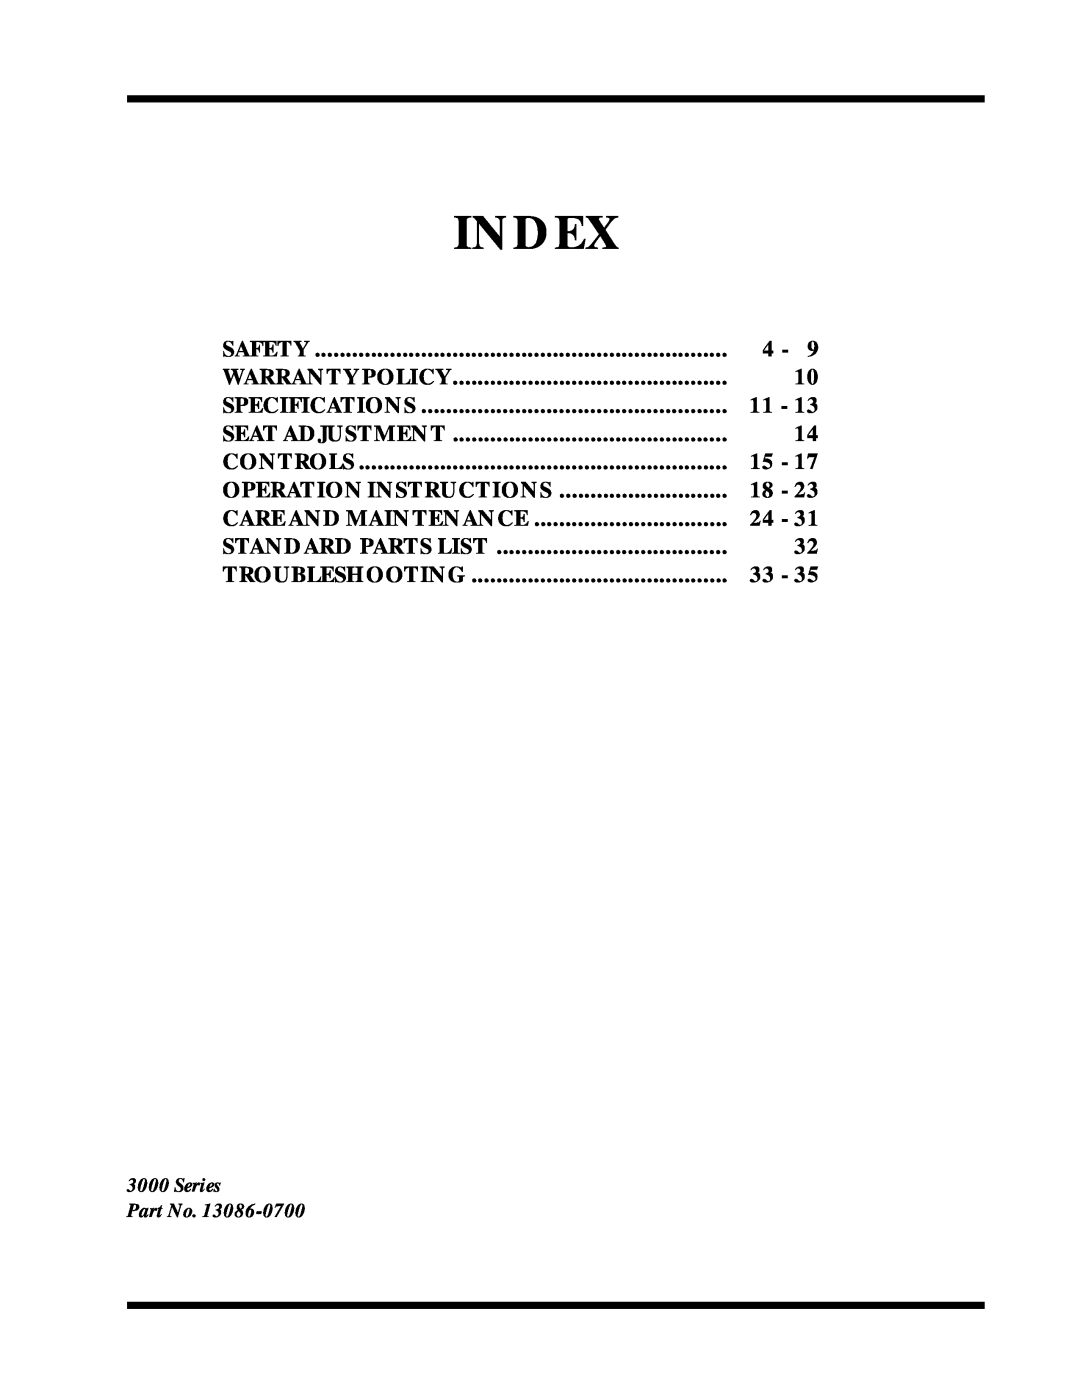 Dixon 6025 manual Index, Operation Instructions 